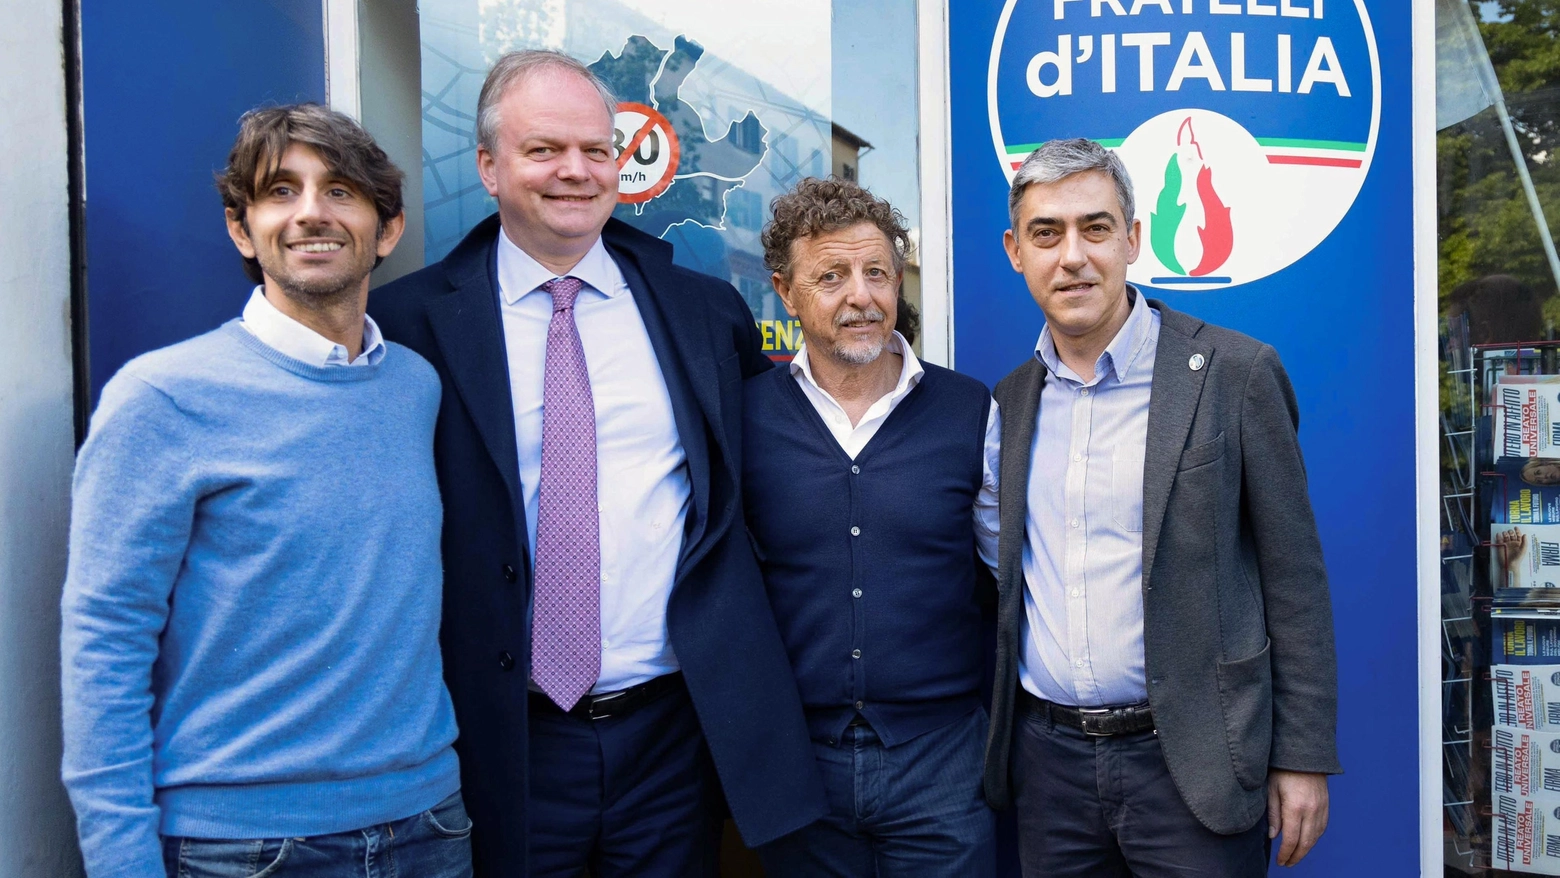 La presentazione dei candidati di Fratelli d'Italia (Foto New Press Photo)